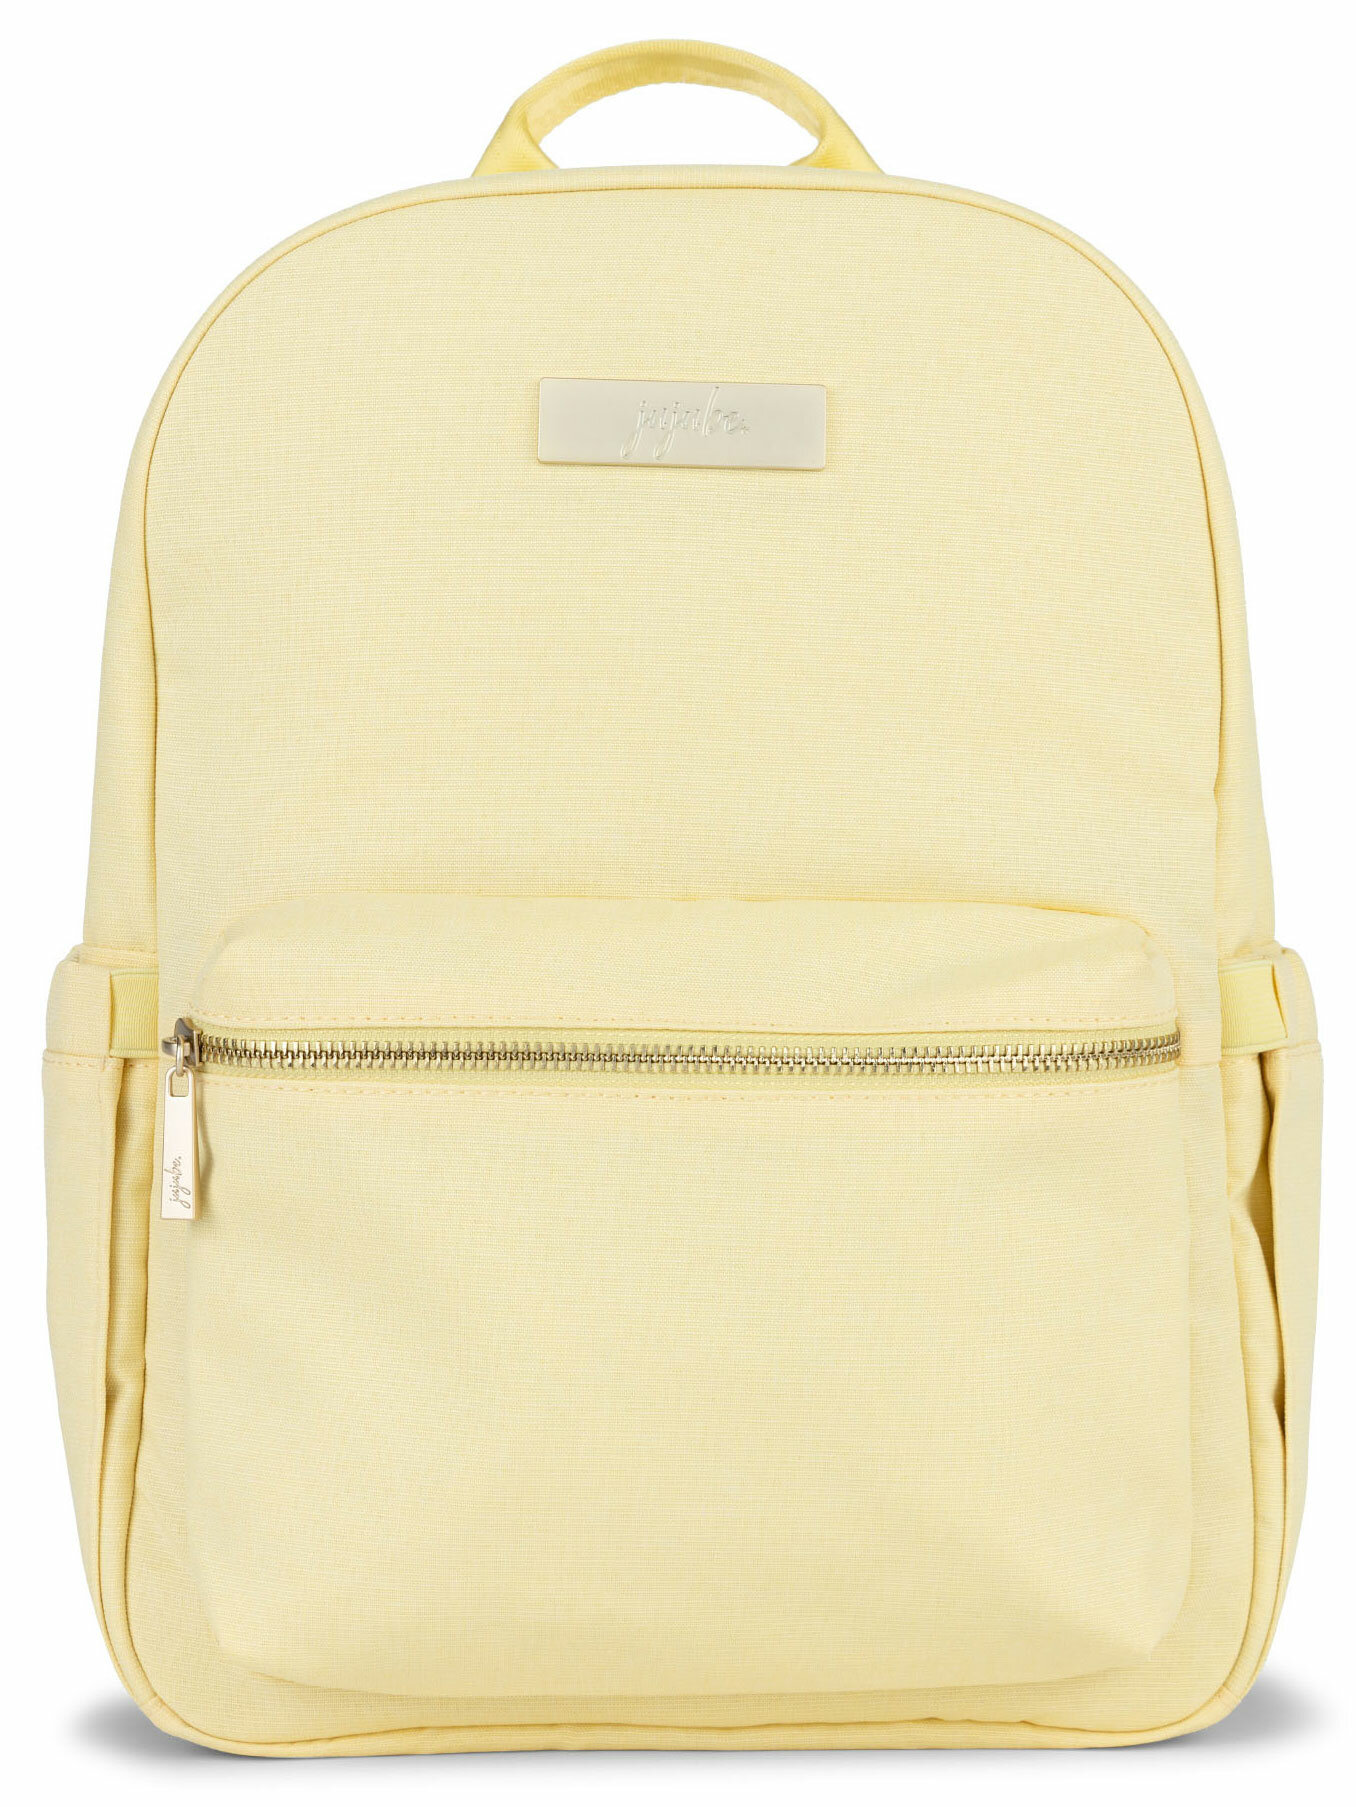 JuJuBe (США) Рюкзак для мамы Midi Желтый - Sunbeam